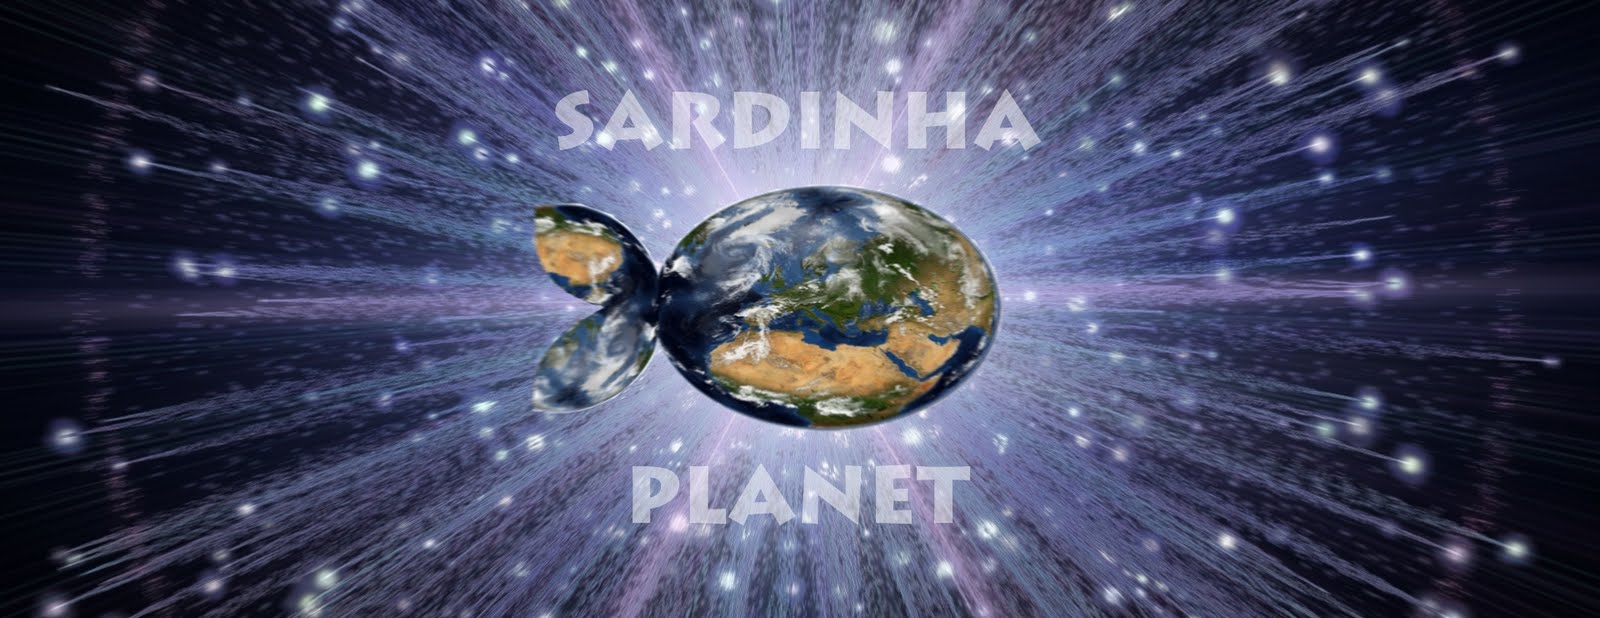 Sardinha Planet